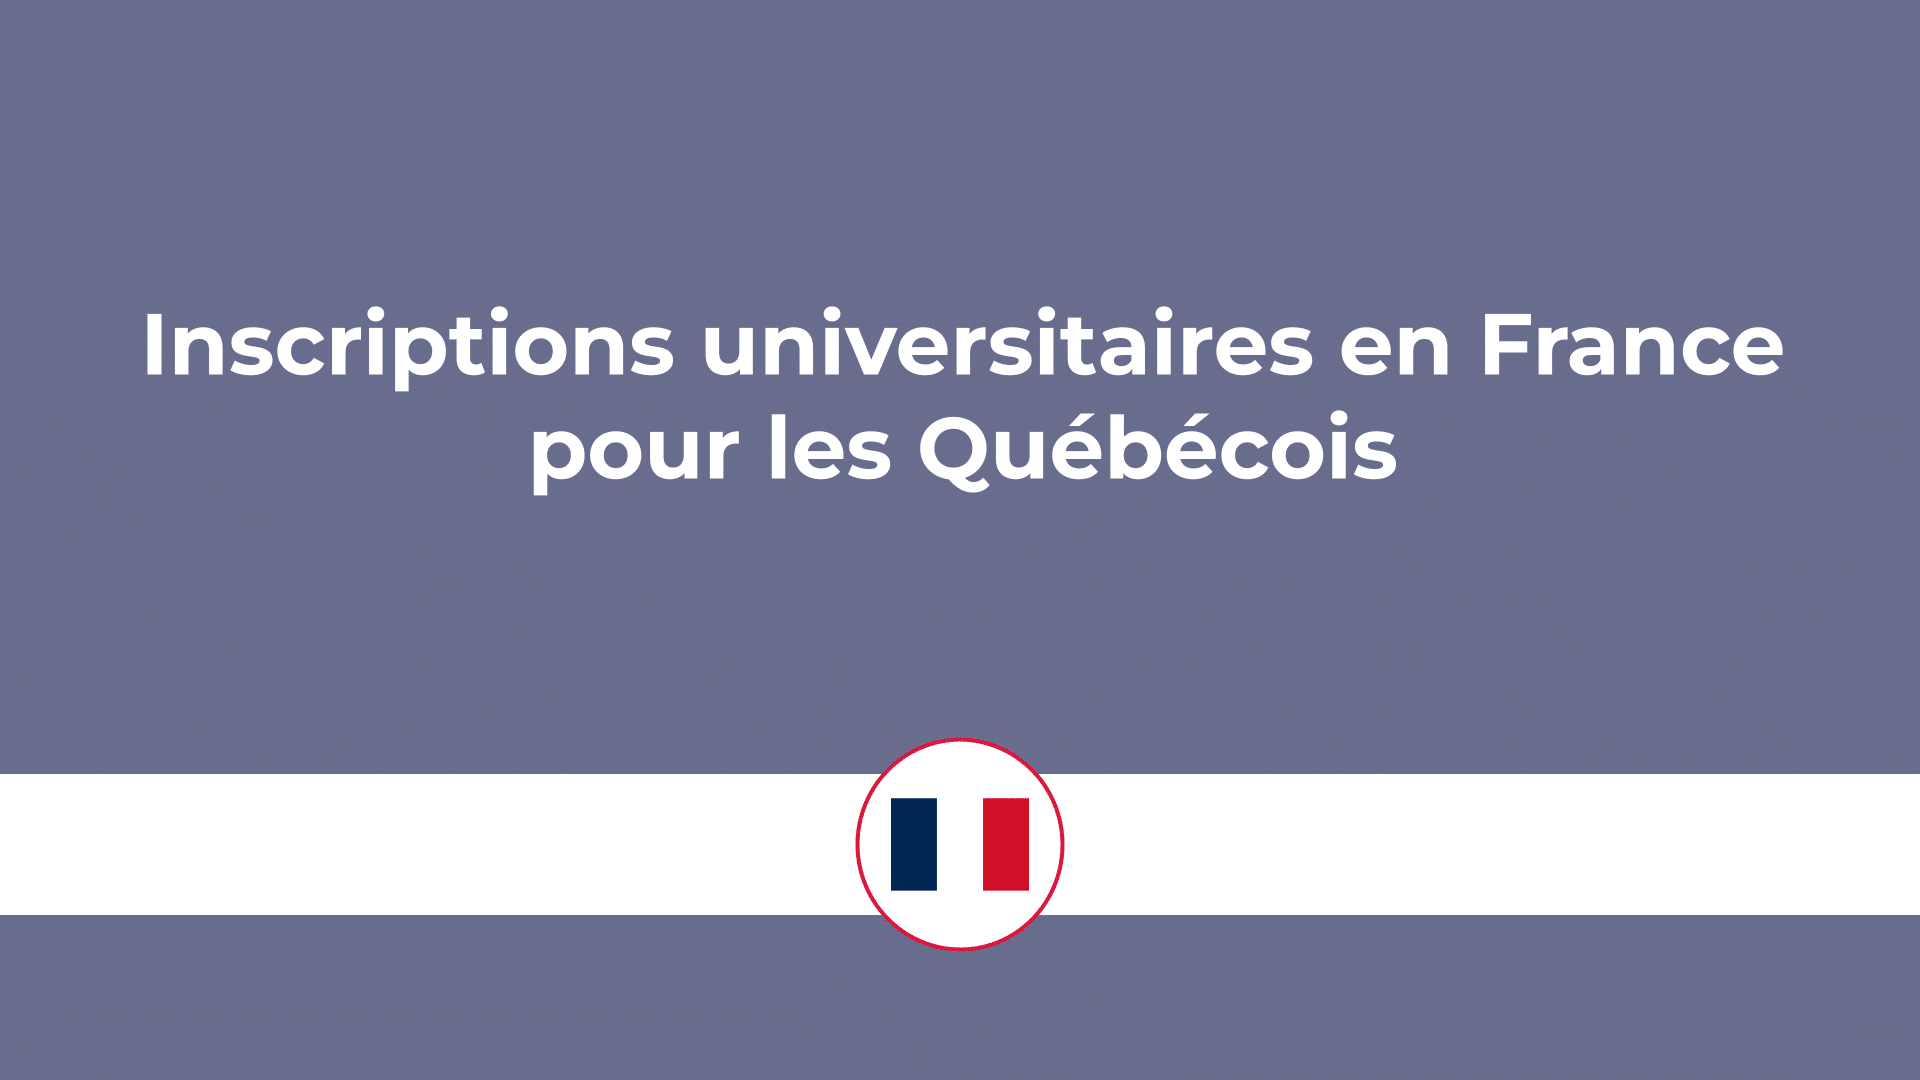 Inscriptions universitaires en France pour les Québécois